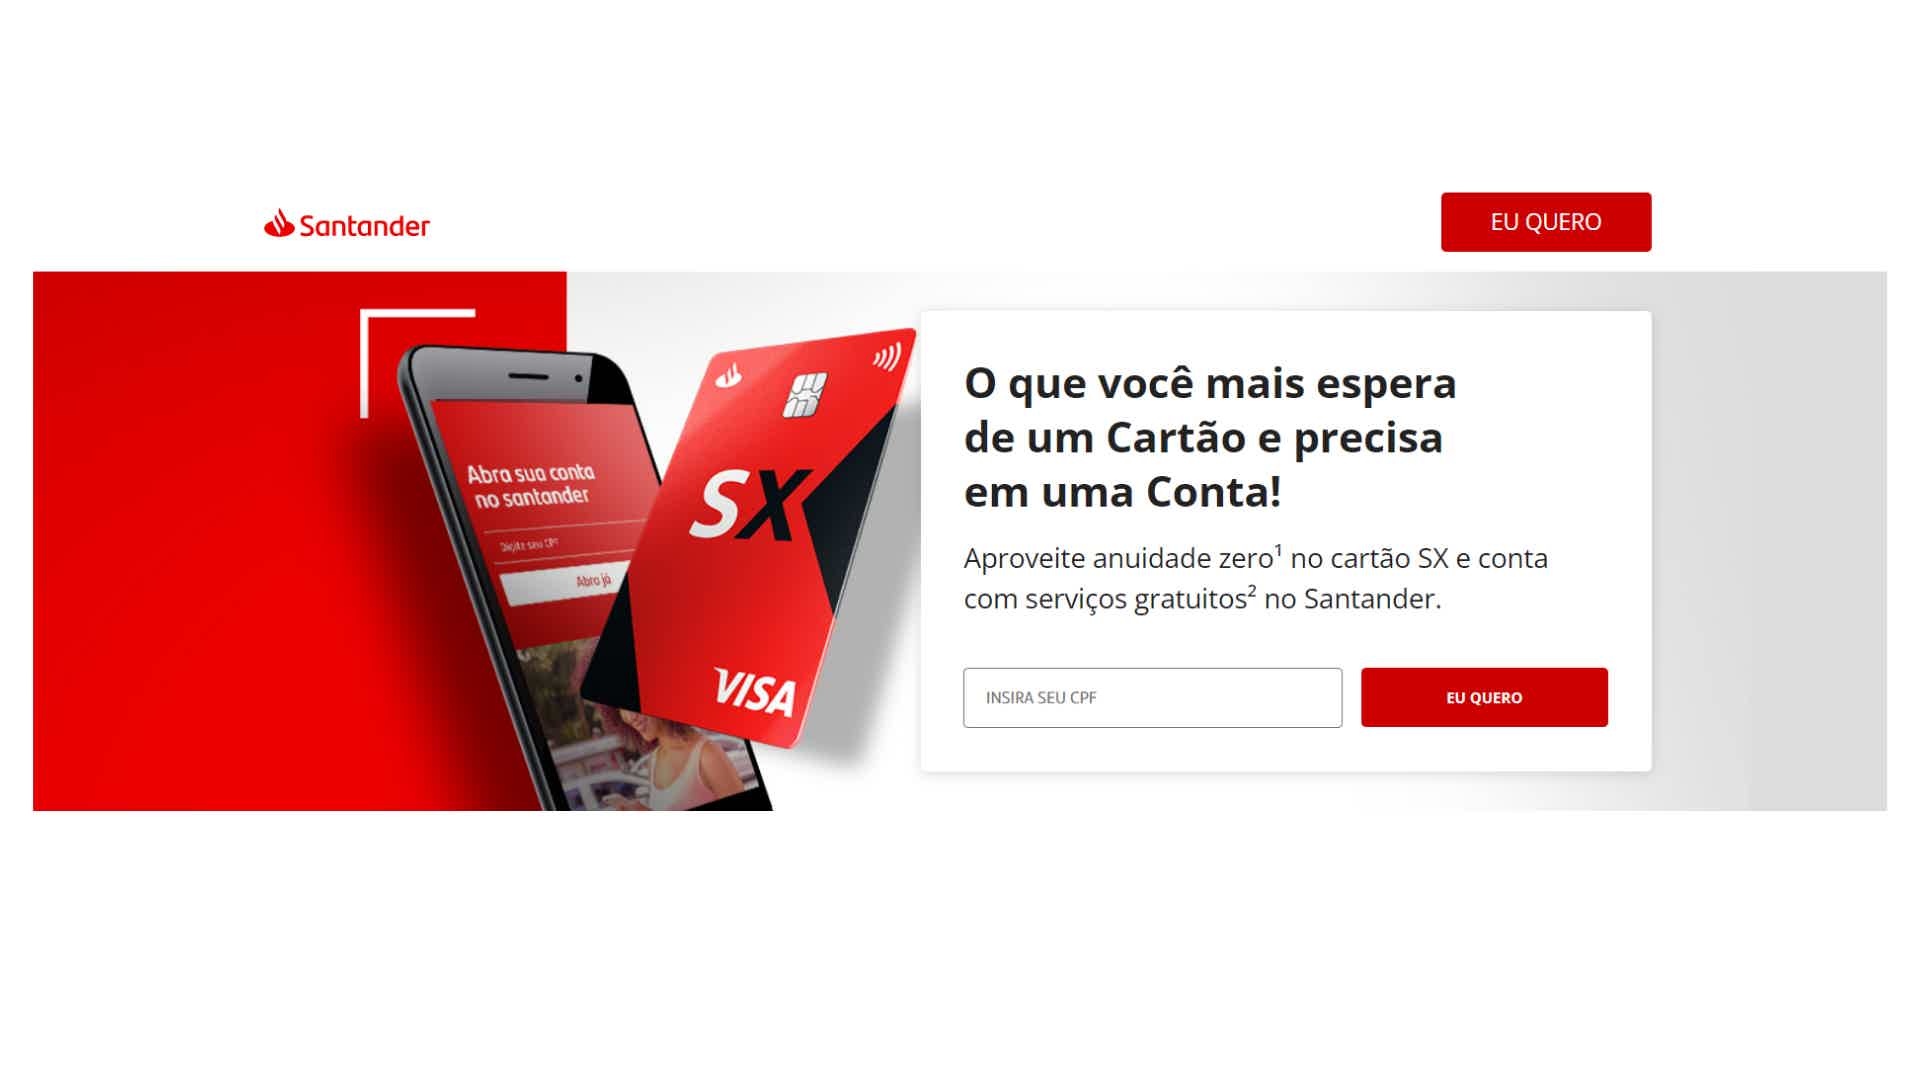 Afinal, será que o cartão Santander SX vale a pena? Fonte: Santander.